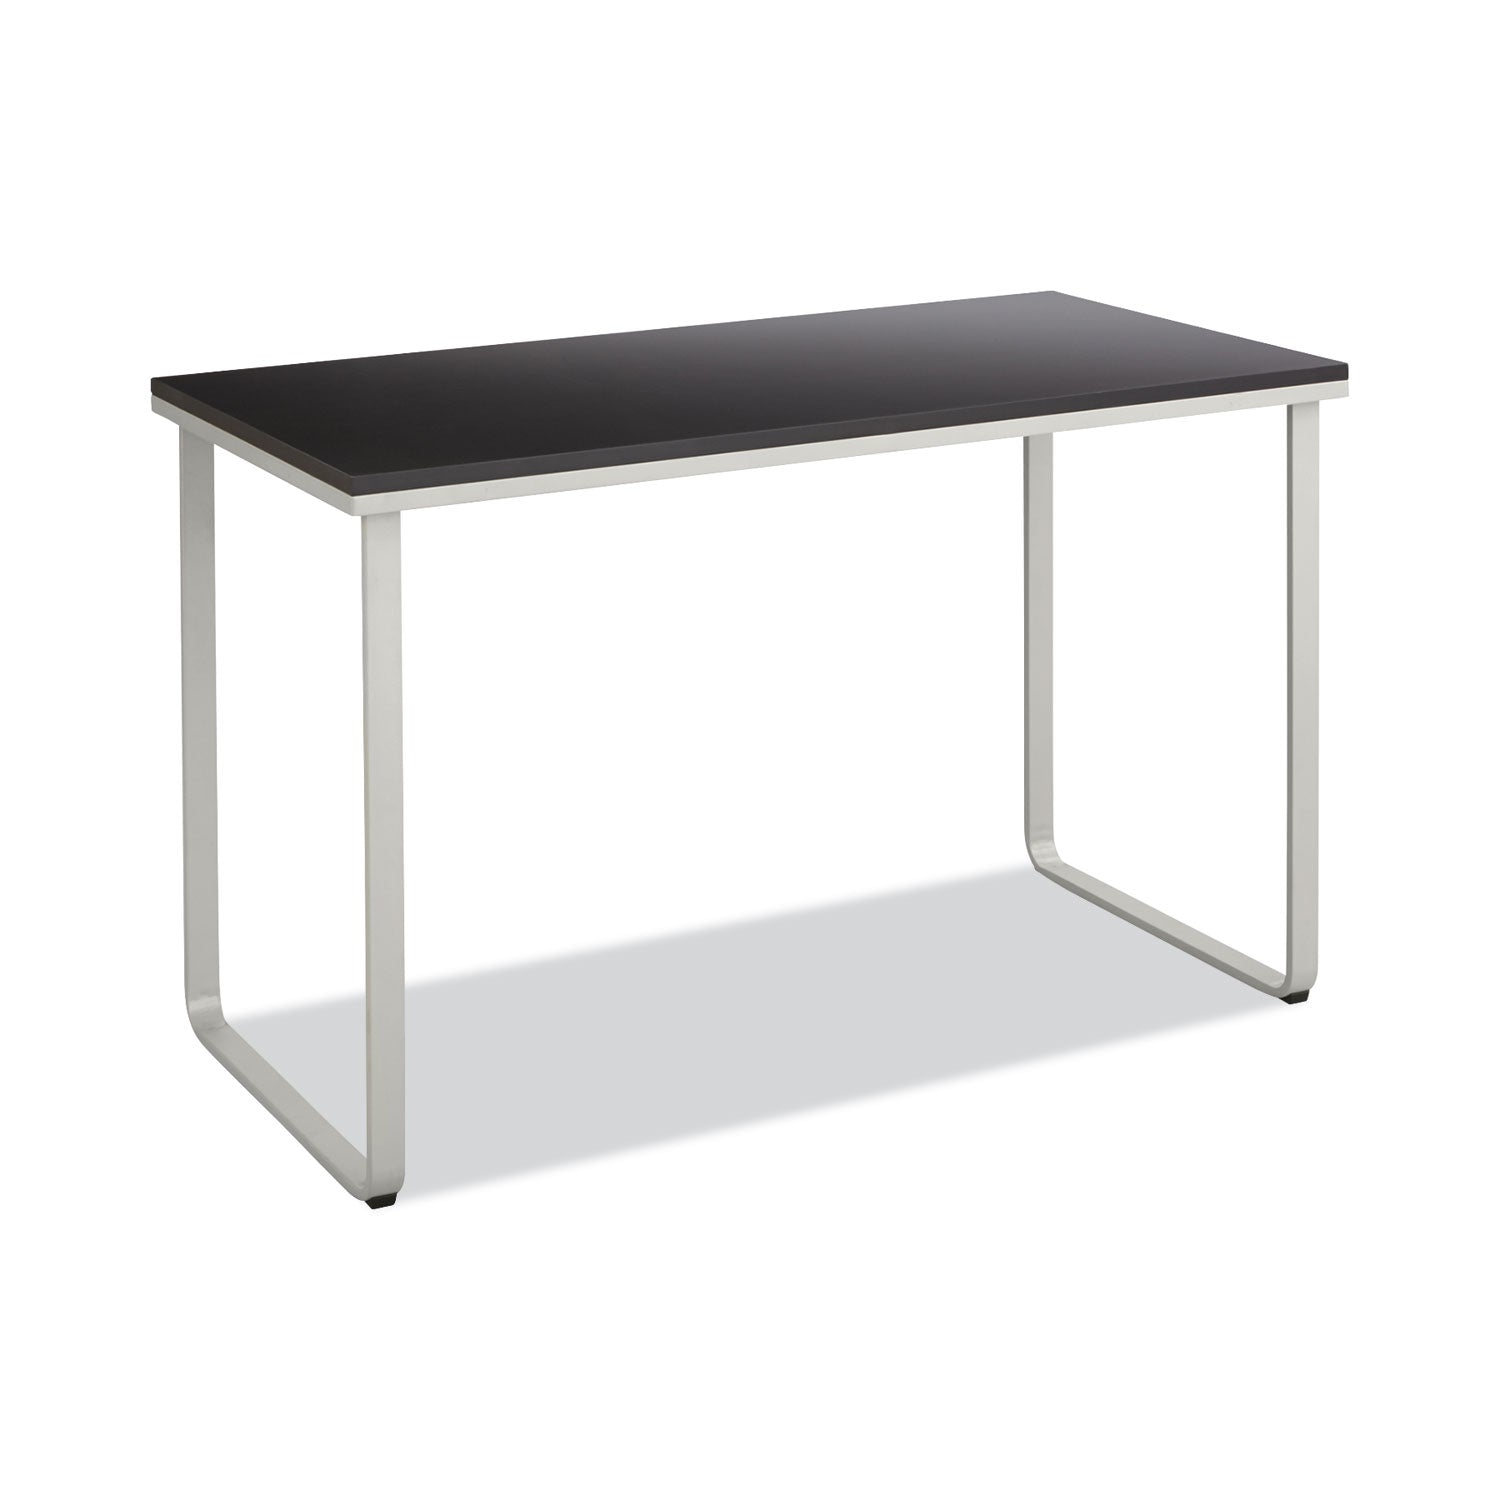 Steel Desk, 47.25" x 24" x 28.75", Black/Silver - 